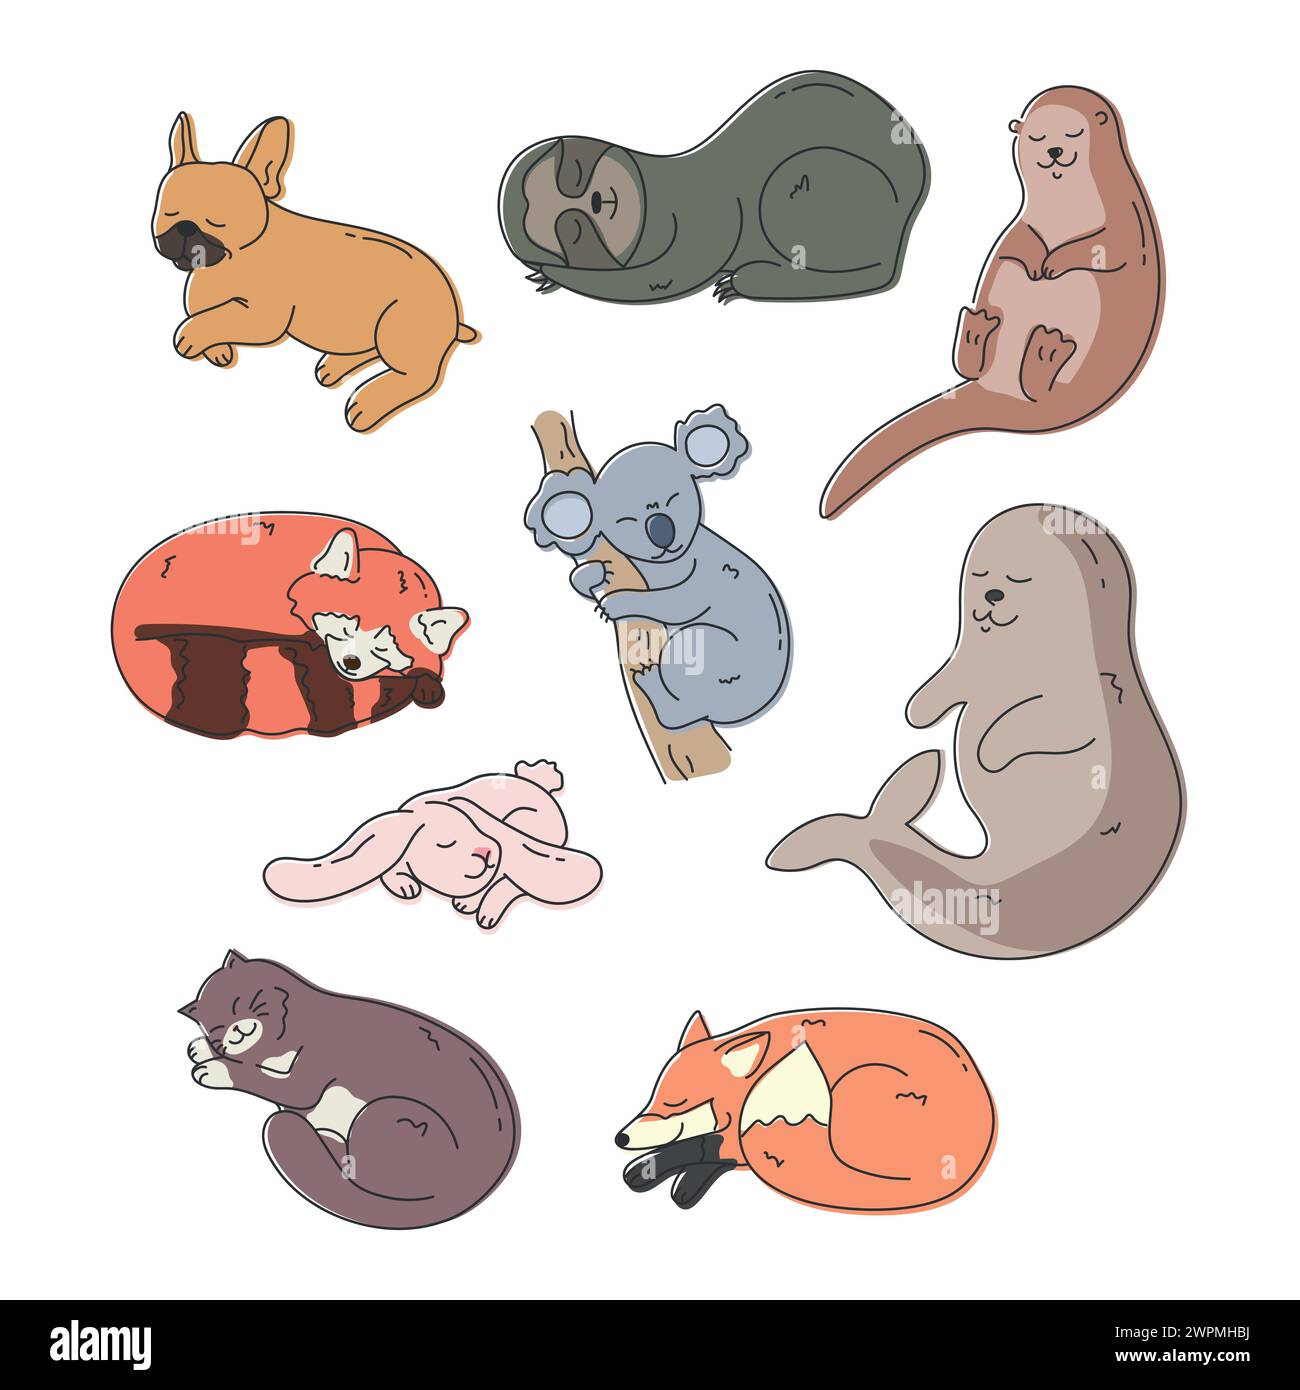 Set von niedlichen handgezeichneten verschiedenen schlafenden Tieren. Cartoon schläfrige Katze, Otter, Robbe, Koala, französische Bulldogge, Kaninchen, Fuchs, roter Panda und Faultier. Ve Stock Vektor